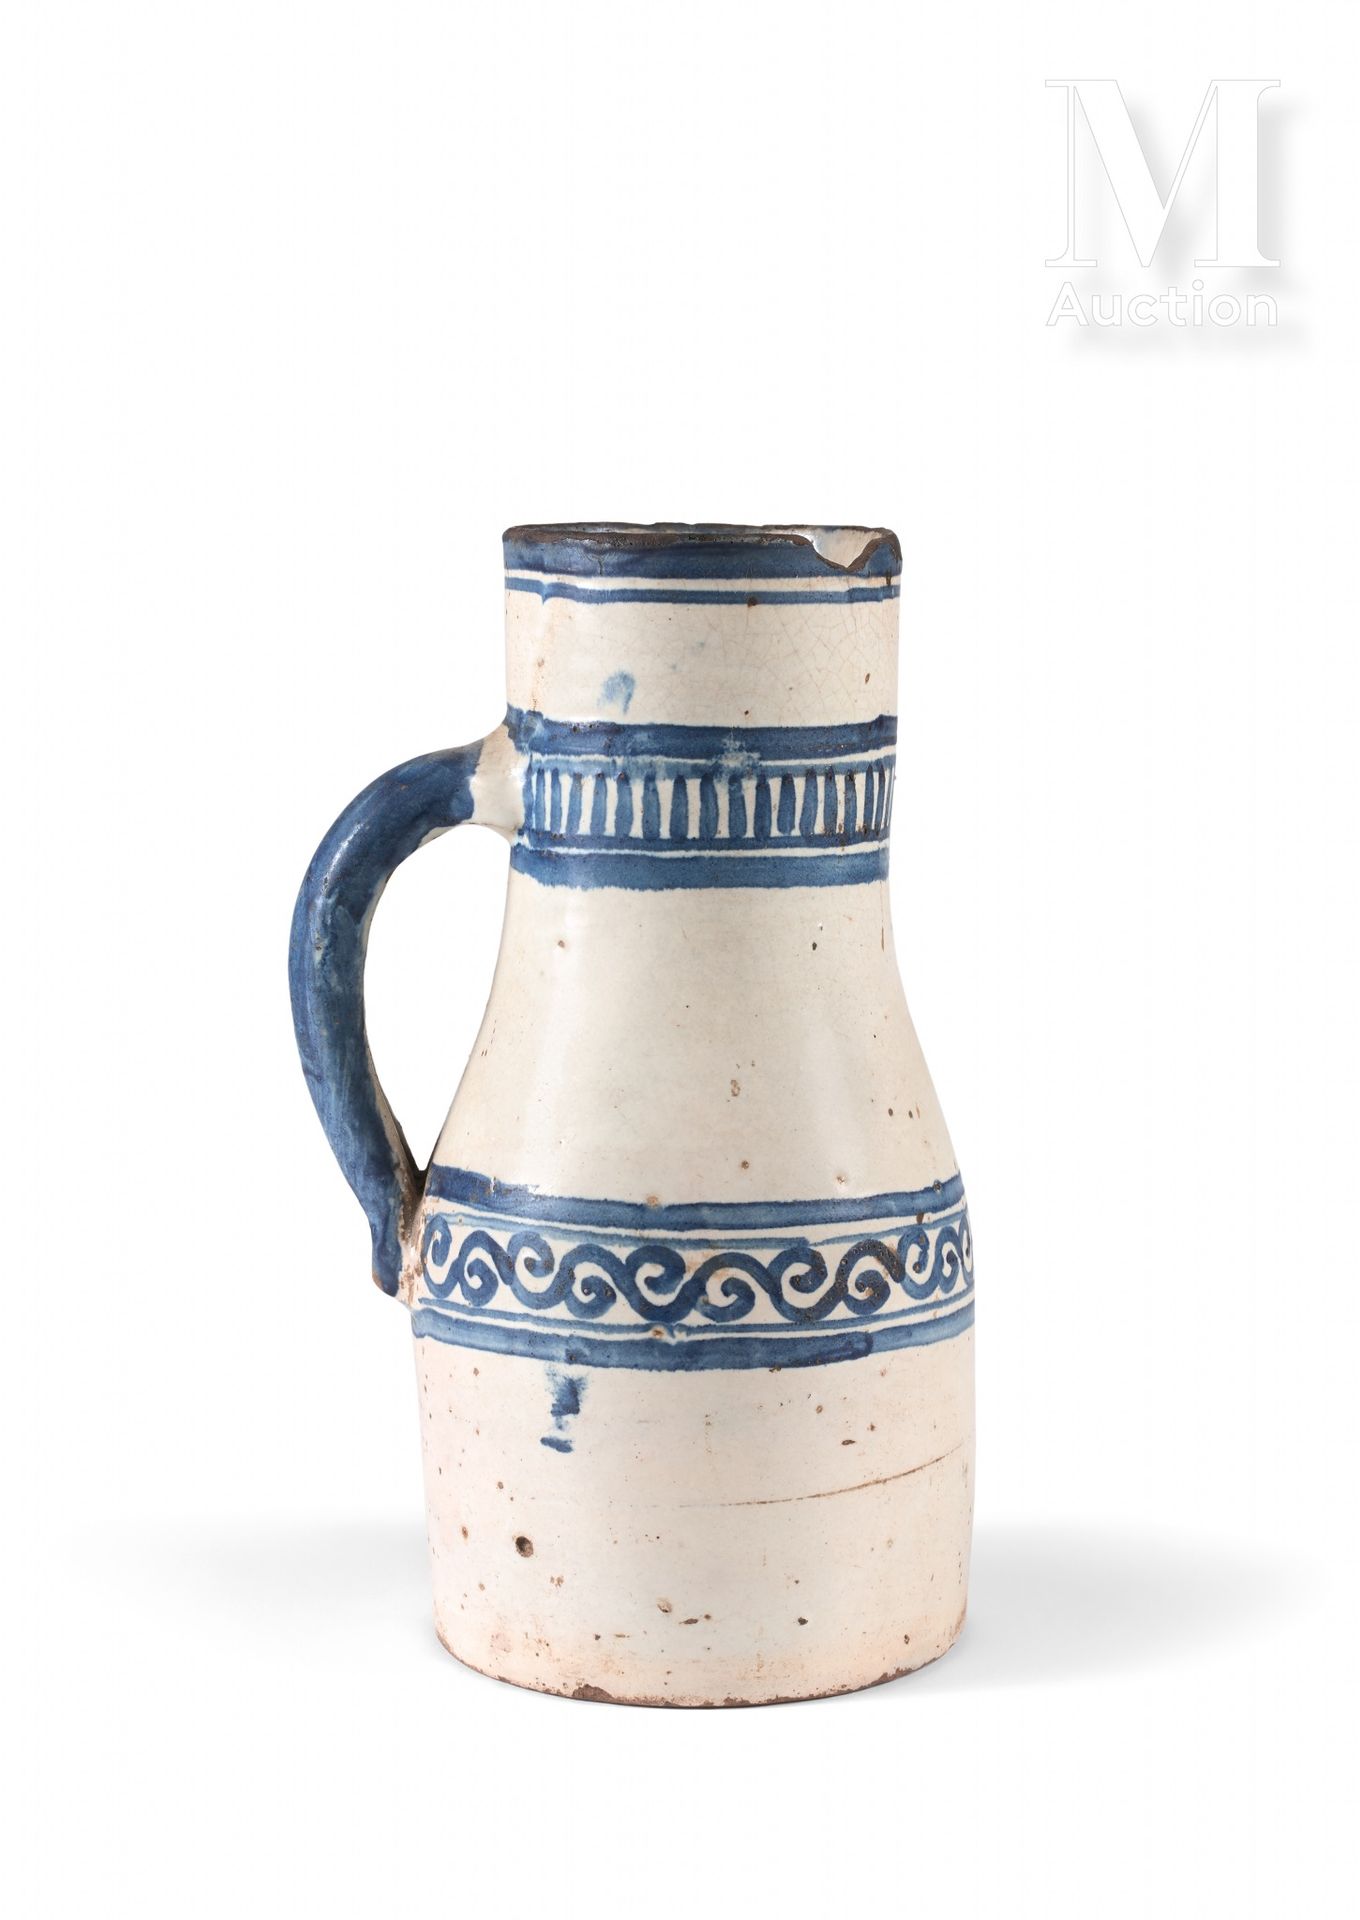 Berrada - Jarre à eau Maroc, Fès, XVIIIe siècle

Pichet en céramique à décor pei&hellip;